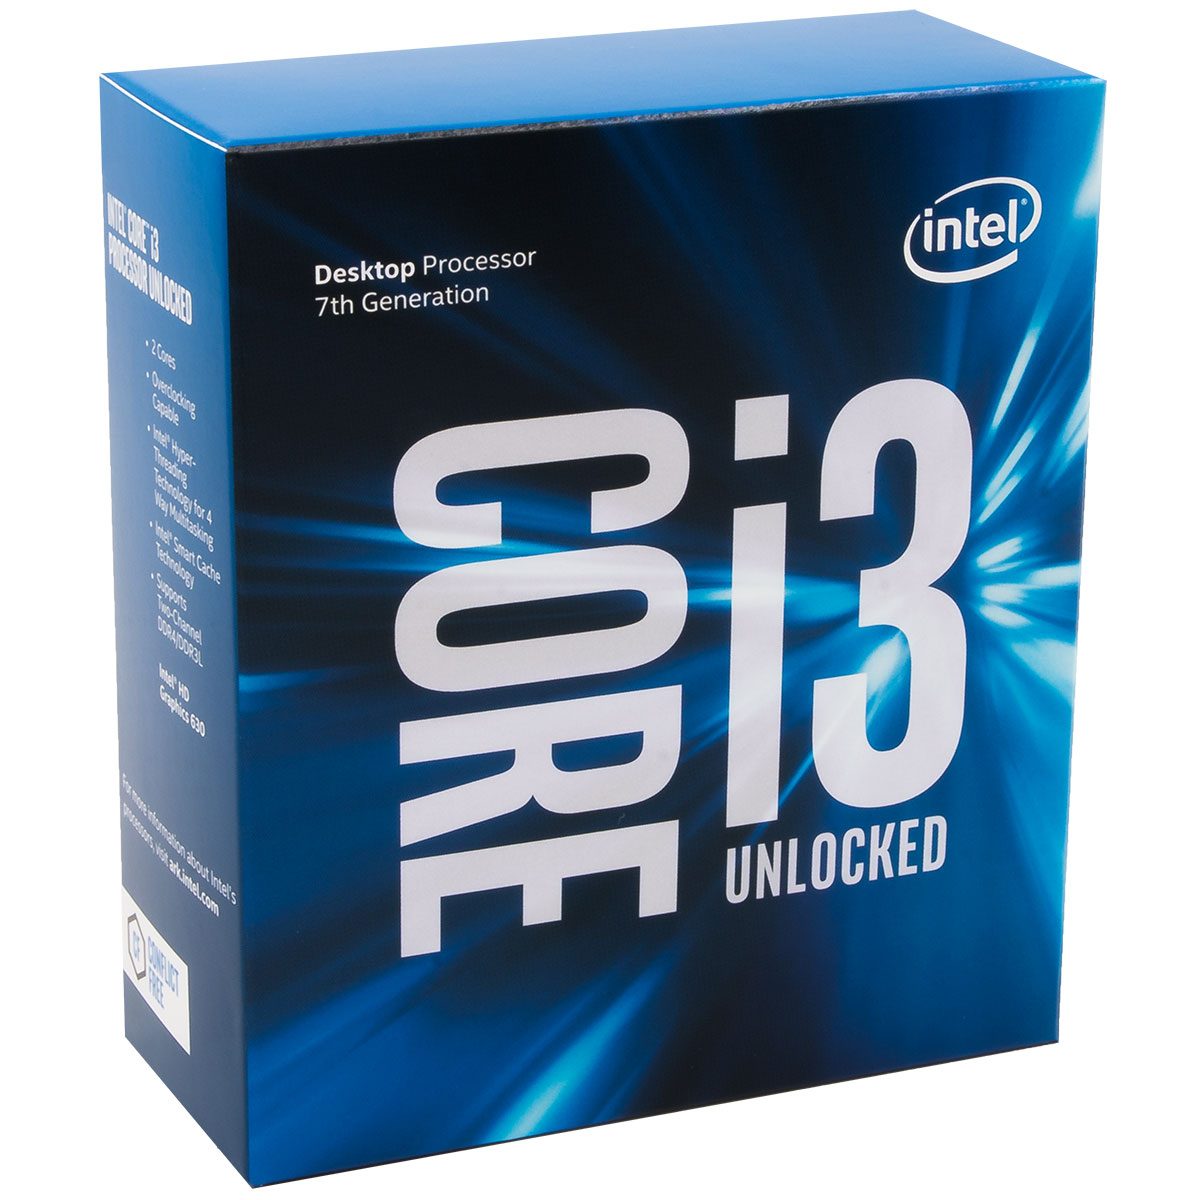 Image 4 : Test : Core i3-7350K et Pentium G4620, les budgets parfaits ?